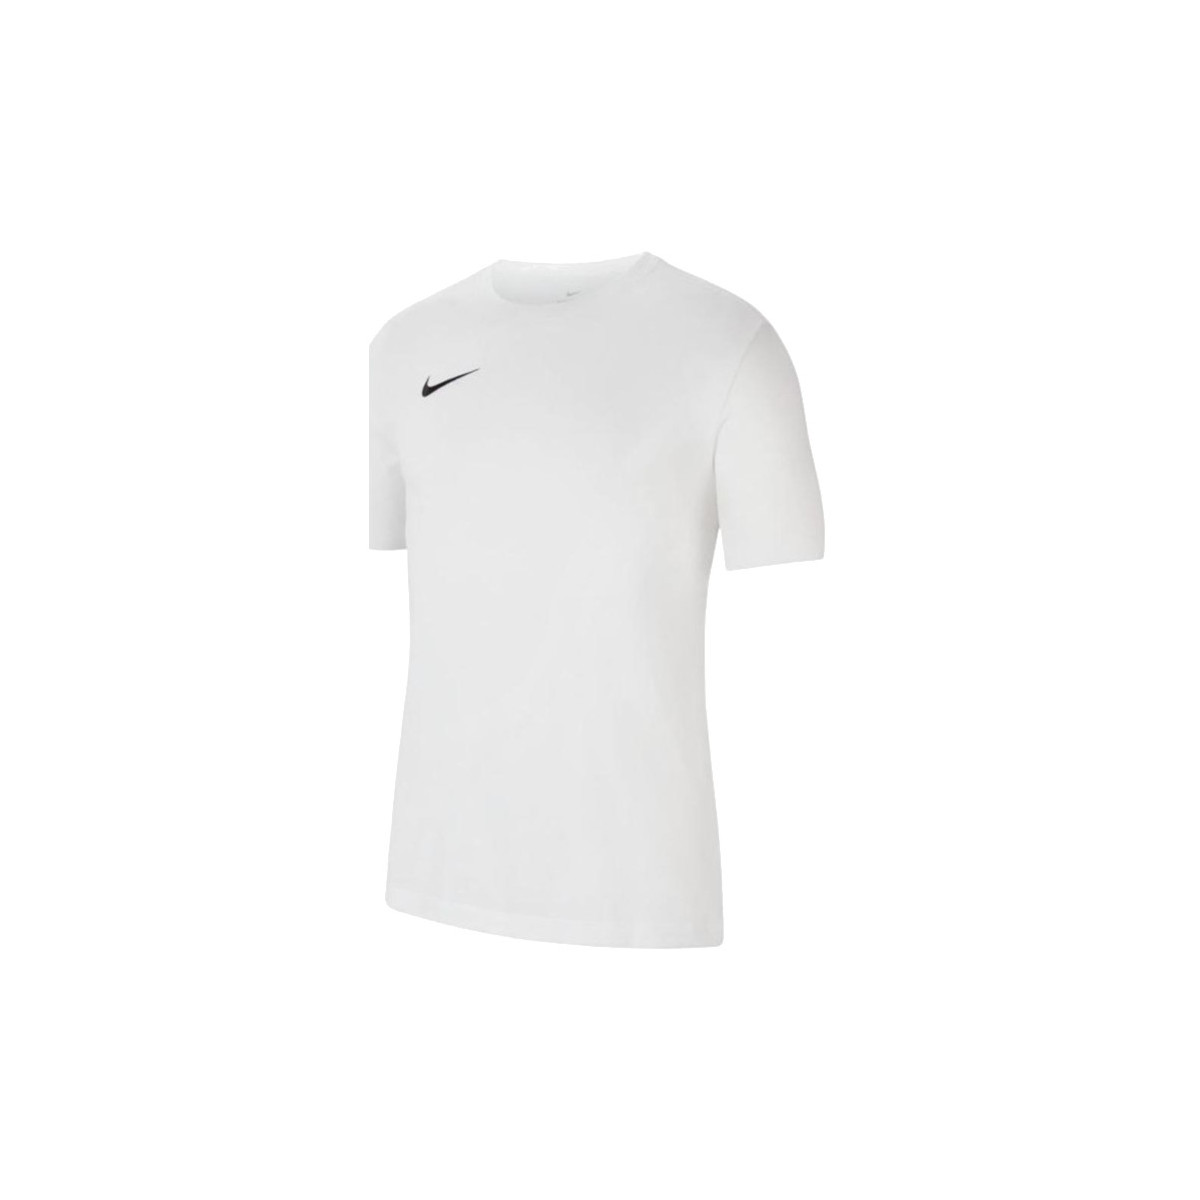 Vêtements Homme T-shirts manches courtes Nike Dri-Fit Park 20 Tee Blanc